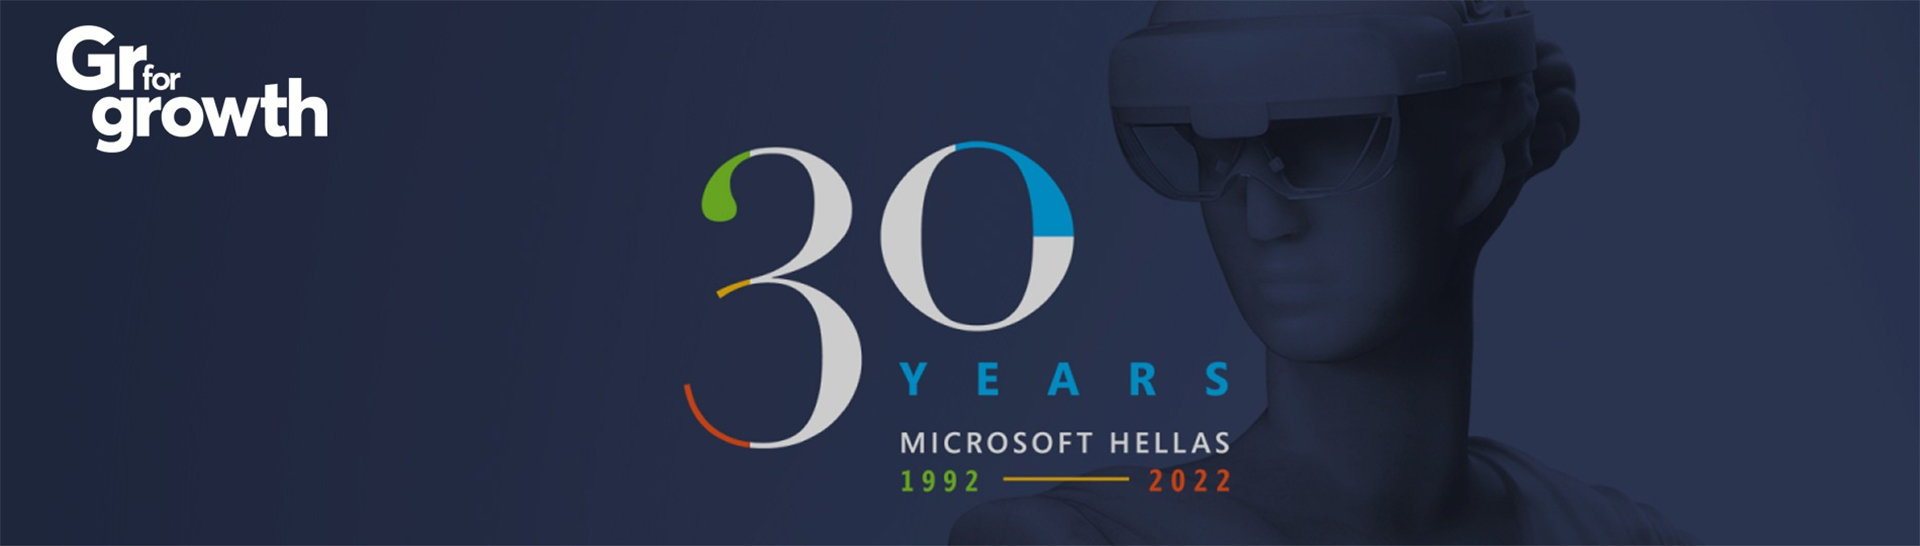 μπλε φόντο με γυαλιά εικονικής πραγματικότητας και λέξη 30 Years Microsoft Hellas 1992-2022